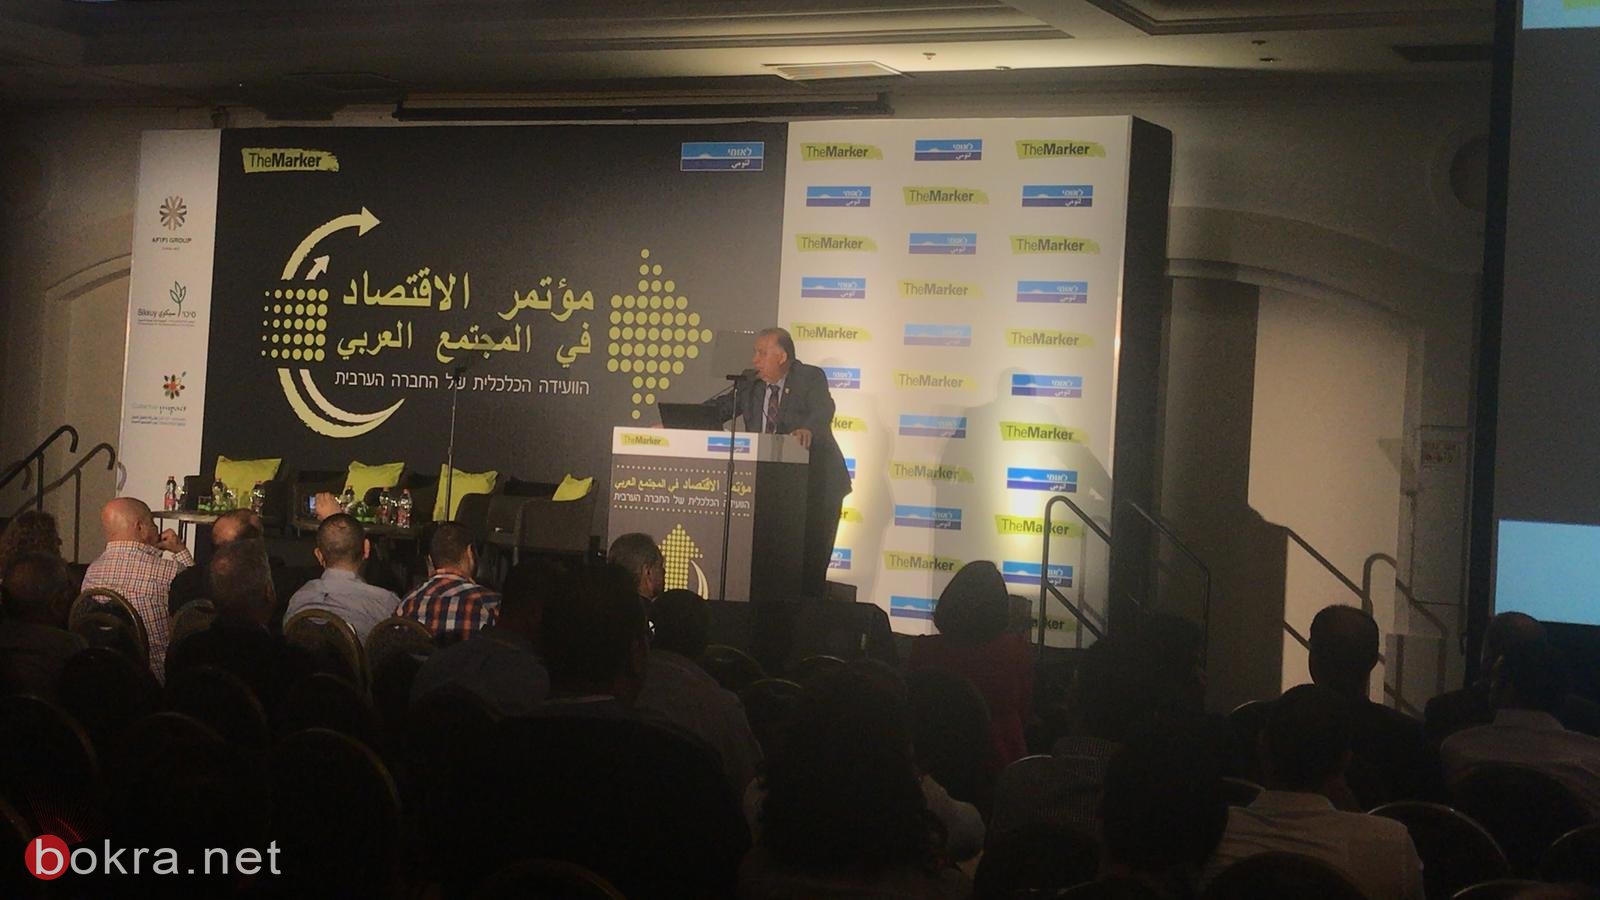  انطلاق أعمال "مؤتمر الاقتصاد في المجتمع العربي" لـ TheMarker وبنك لئومي في الناصرة -17